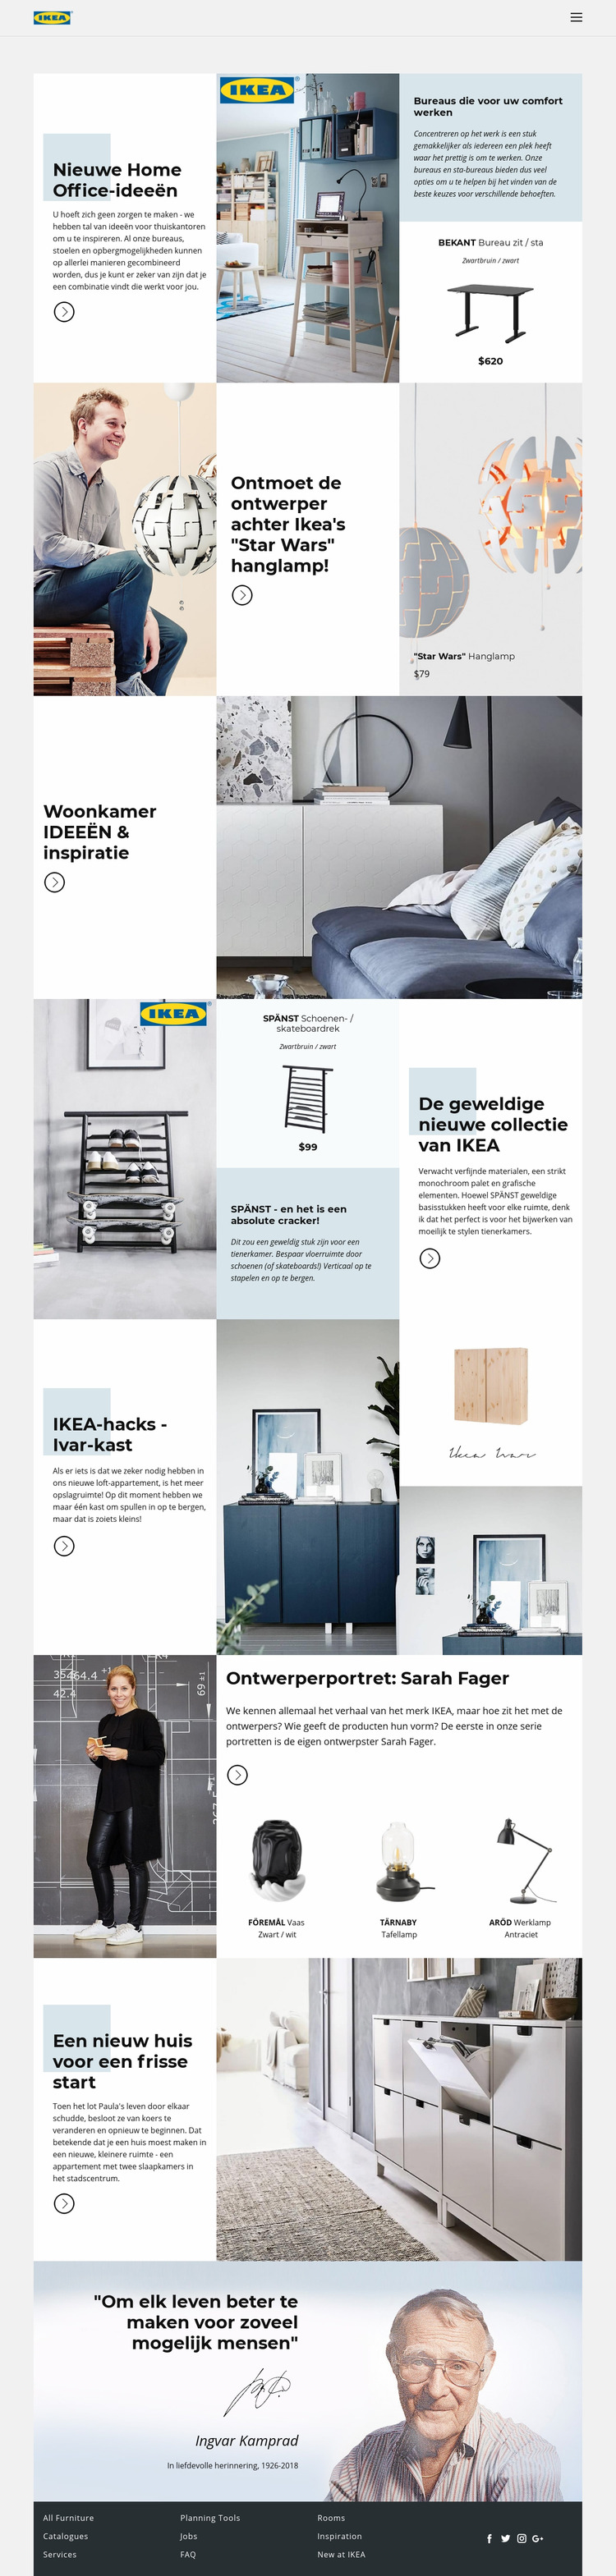 Inspiratie van IKEA Joomla-sjabloon